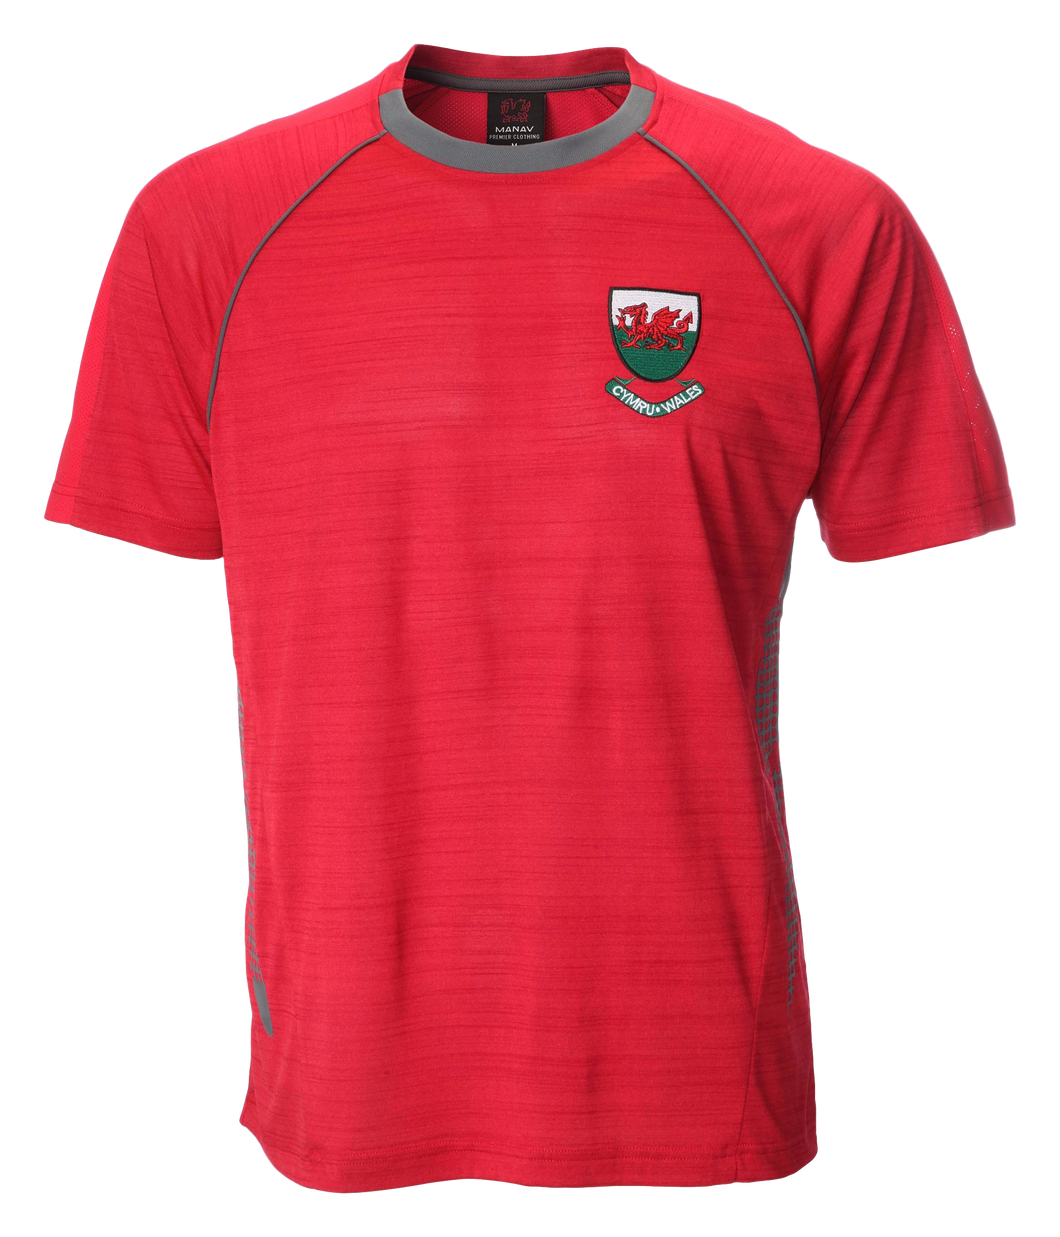 Ceri Flek Cooldry Welsh T-Shirt - In Red